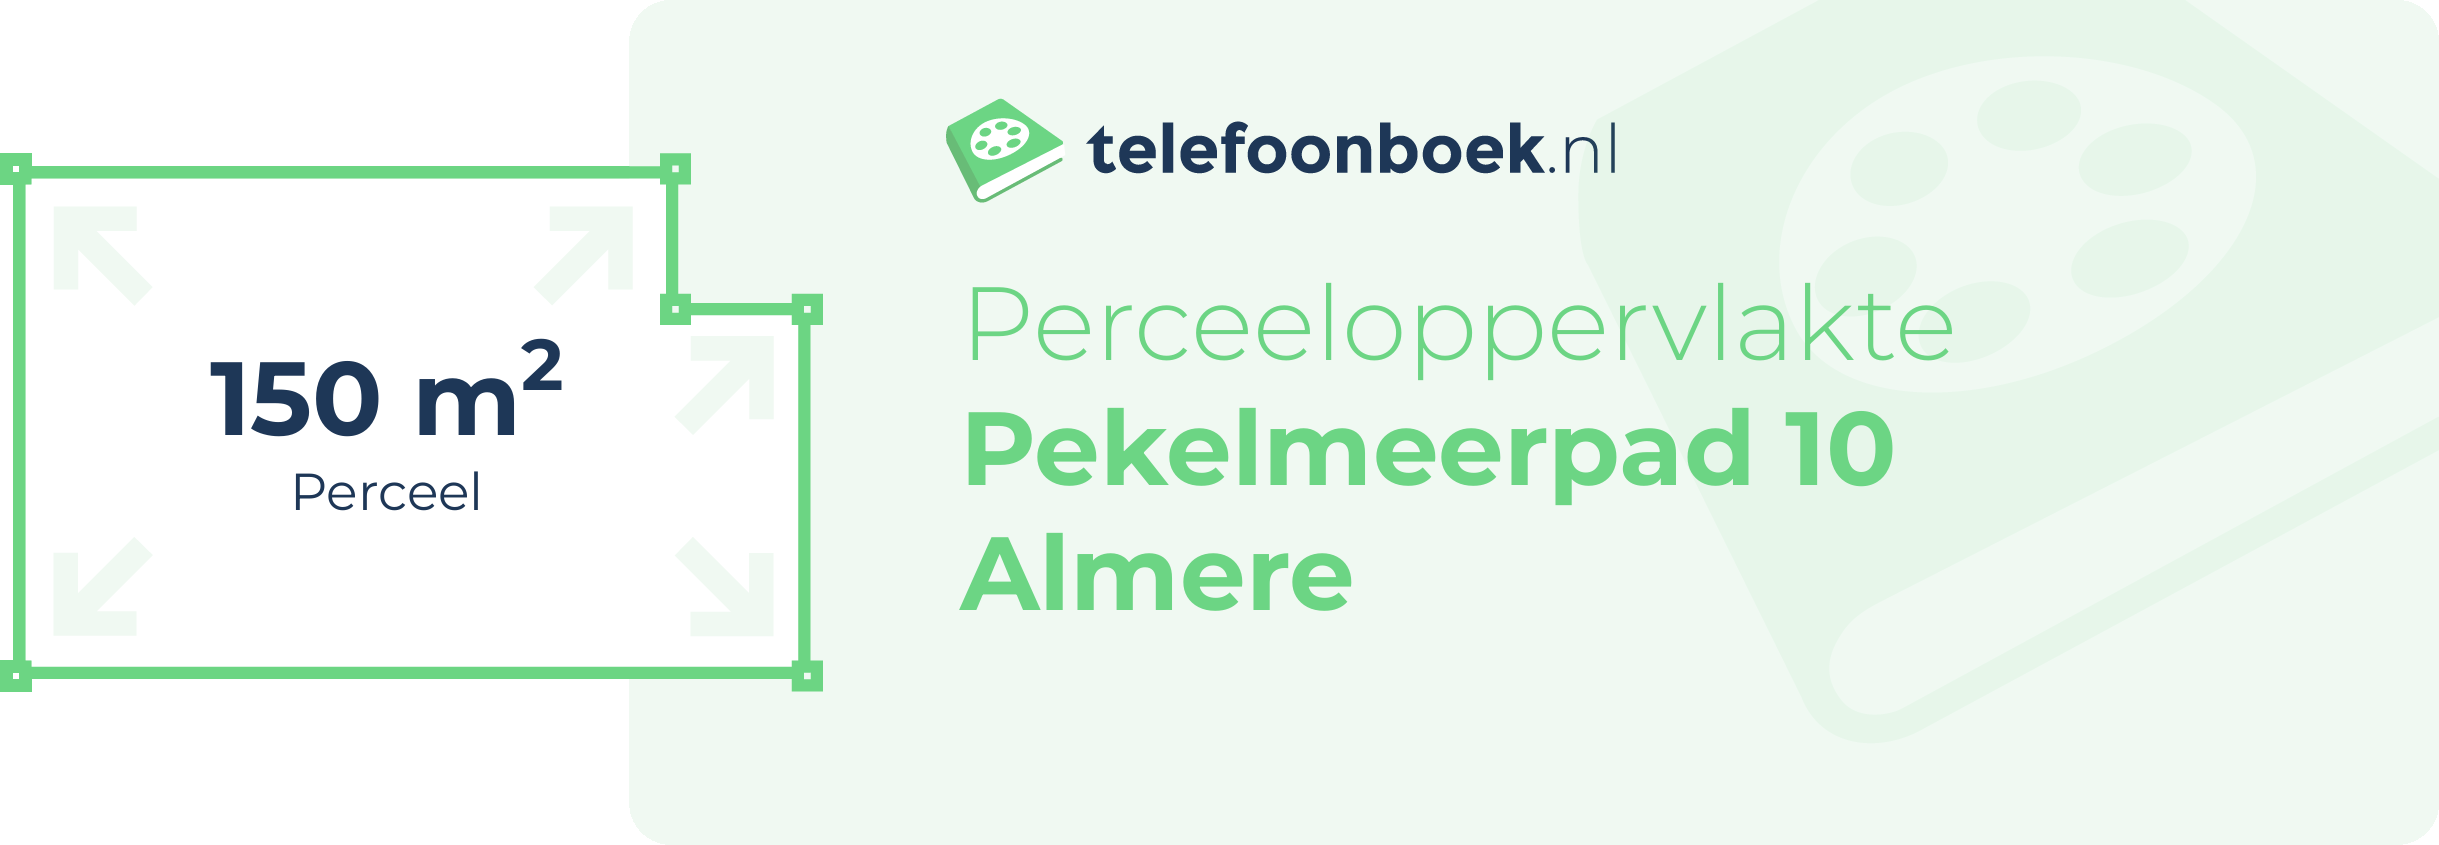 Perceeloppervlakte Pekelmeerpad 10 Almere